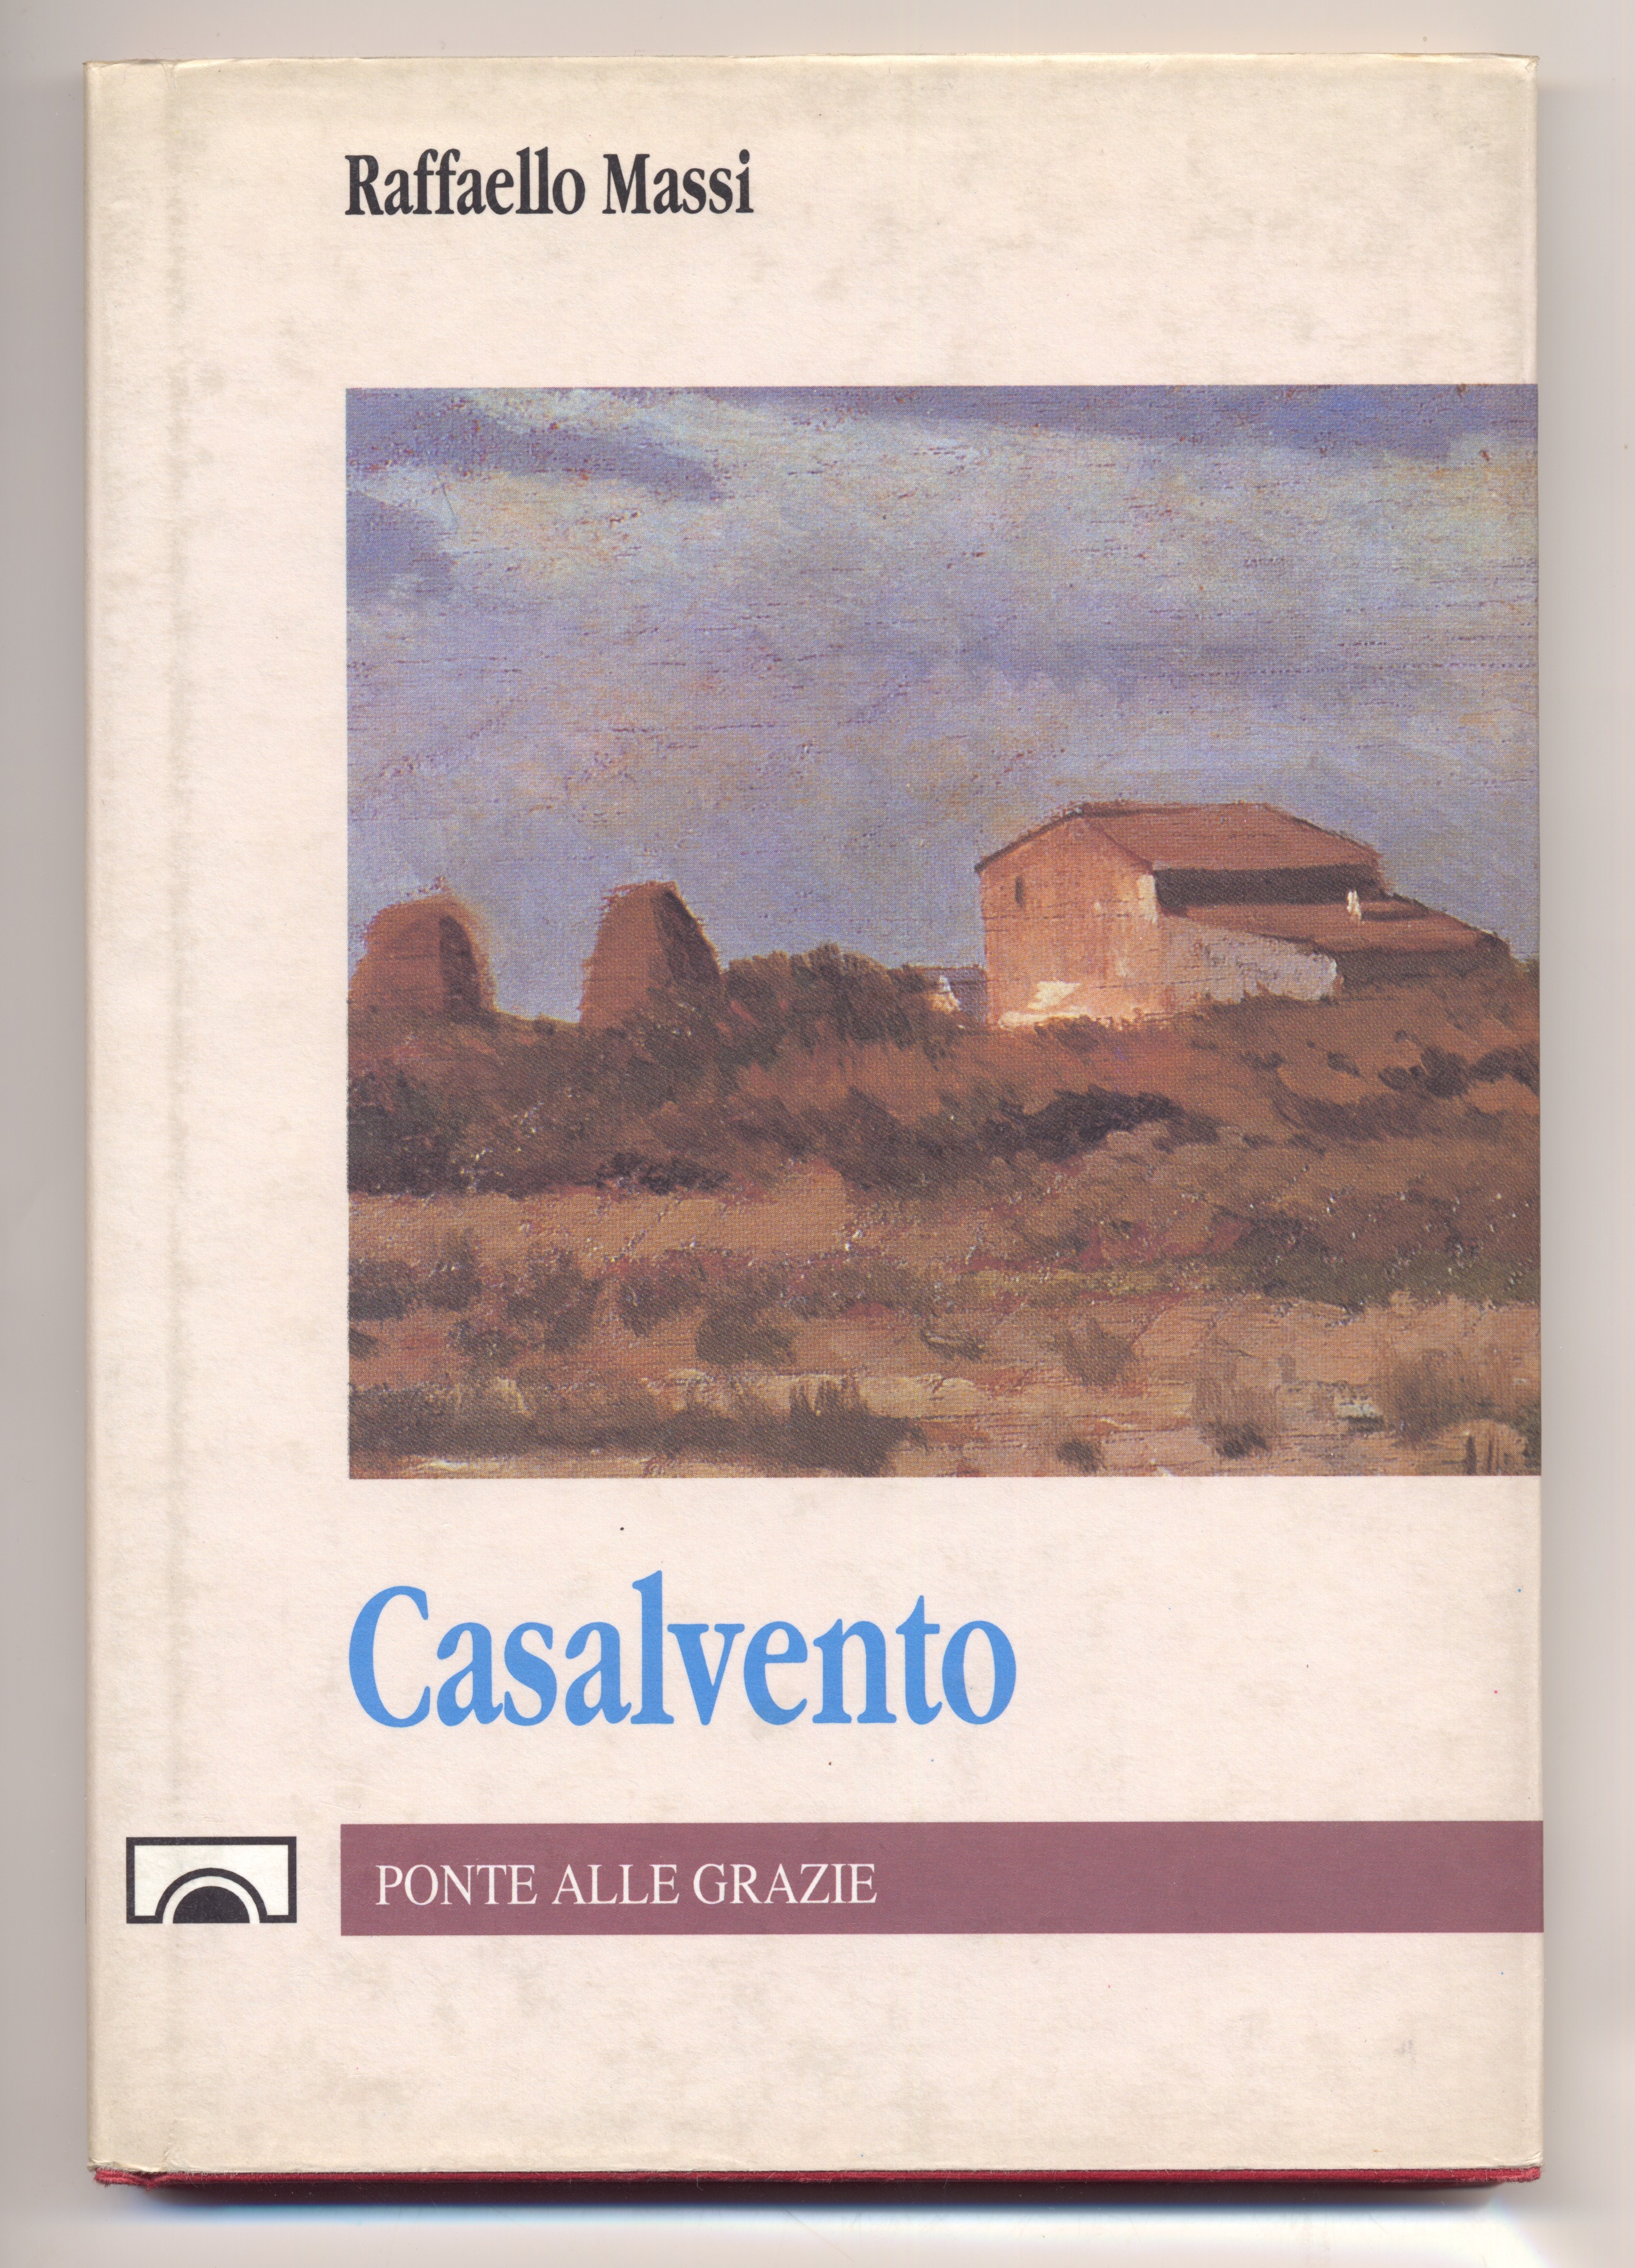 Copertina del libro di Raffaello Massi dal titolo "Casalvento". La storia della vita nella campagna toscana negli anni della l'agricoltura classica